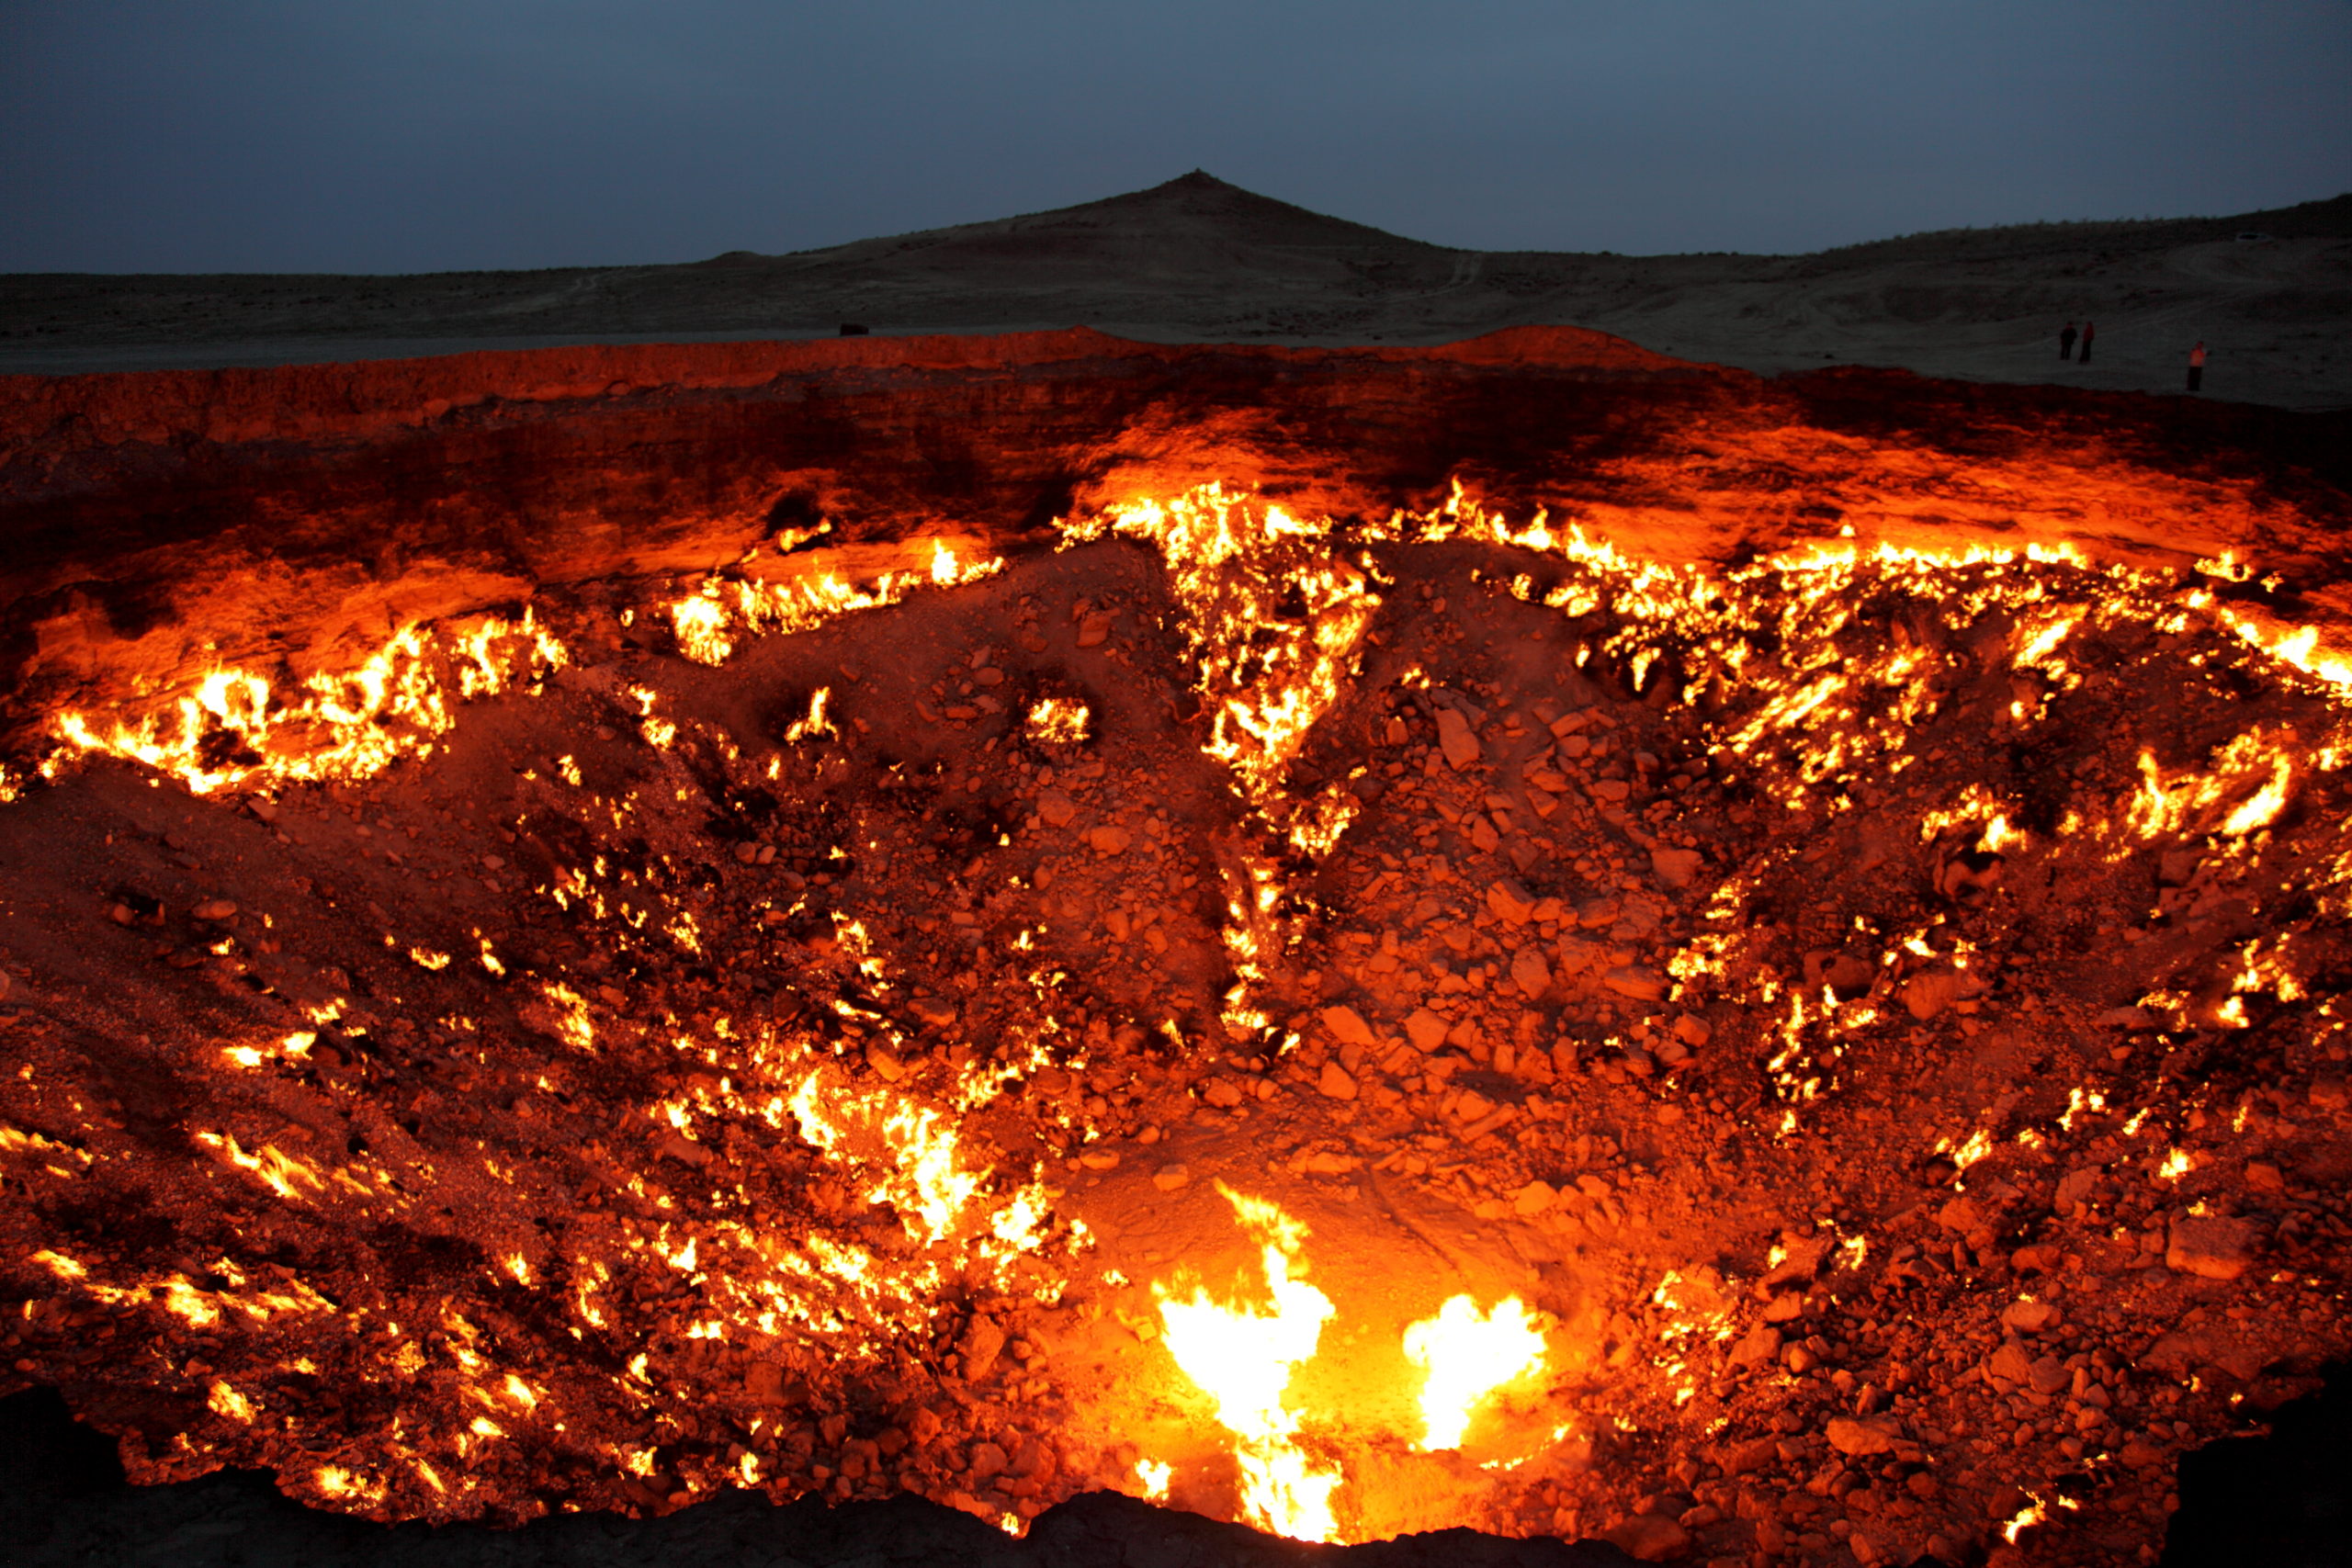 Lieux extraordinaires que tu voudras visiter - La Porte de l'Enfer, Turkmenistan